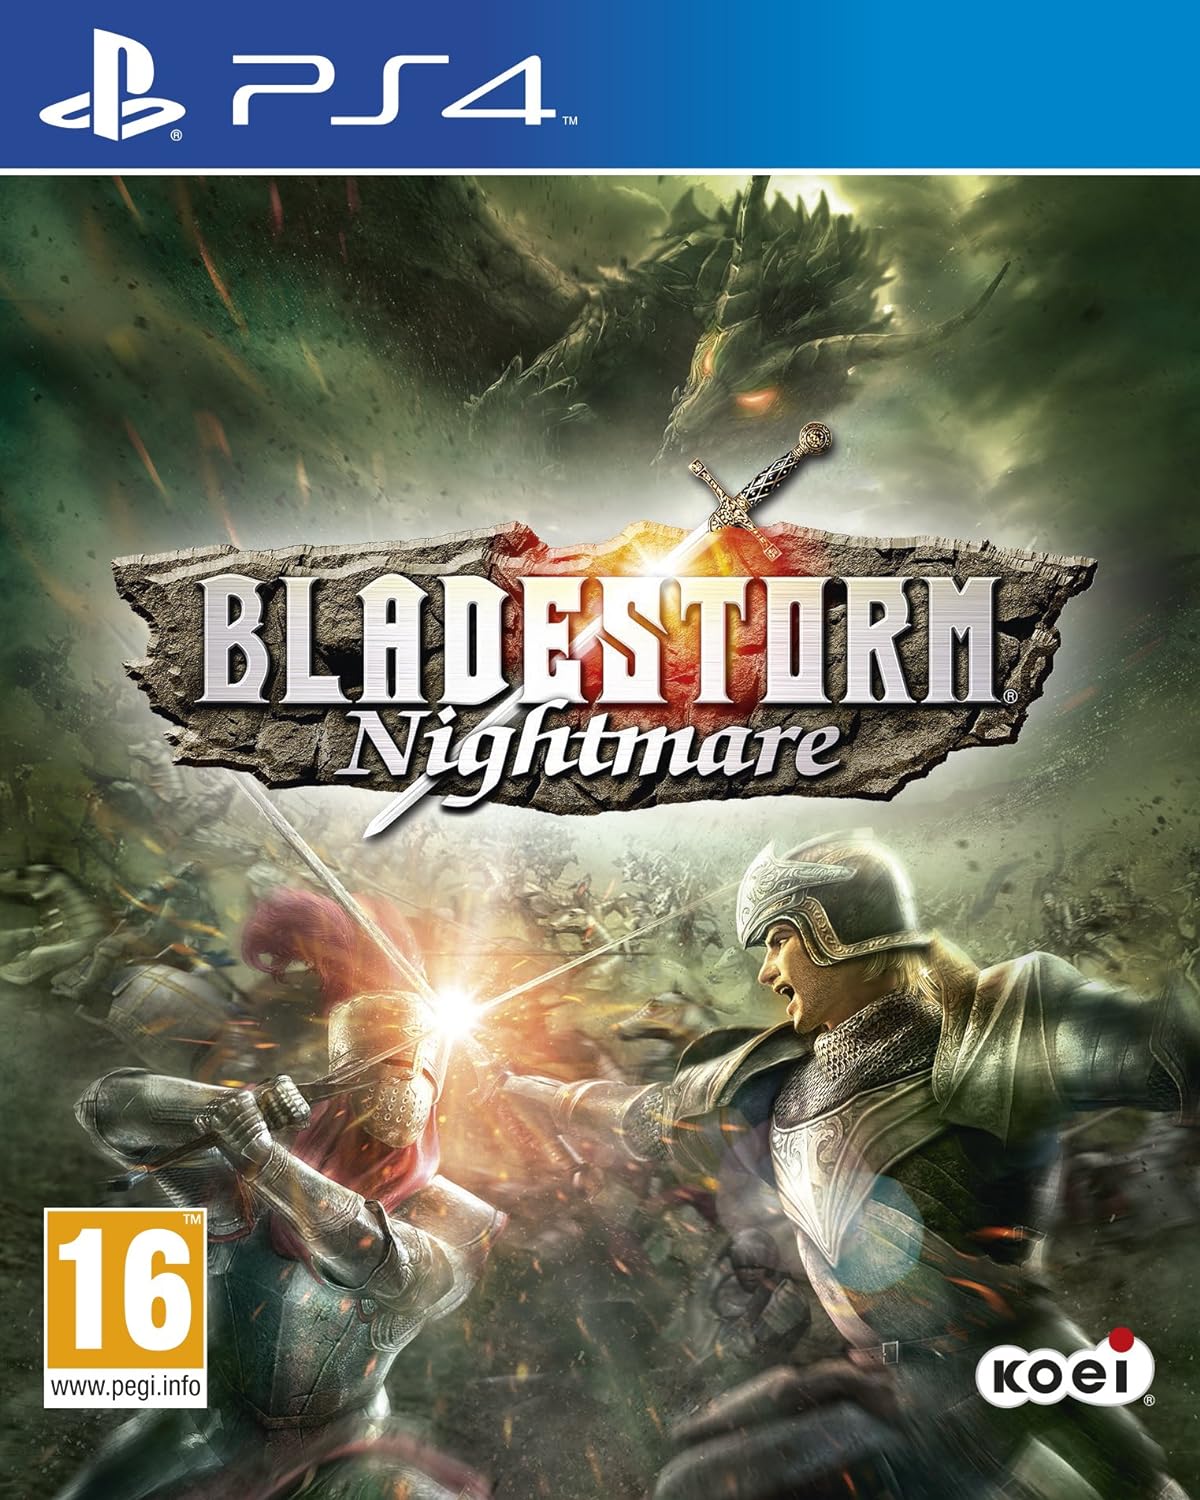 PS4 Bladestorm Nightmare - Usato Garantito Disponibilità immediata Koei Tecmo